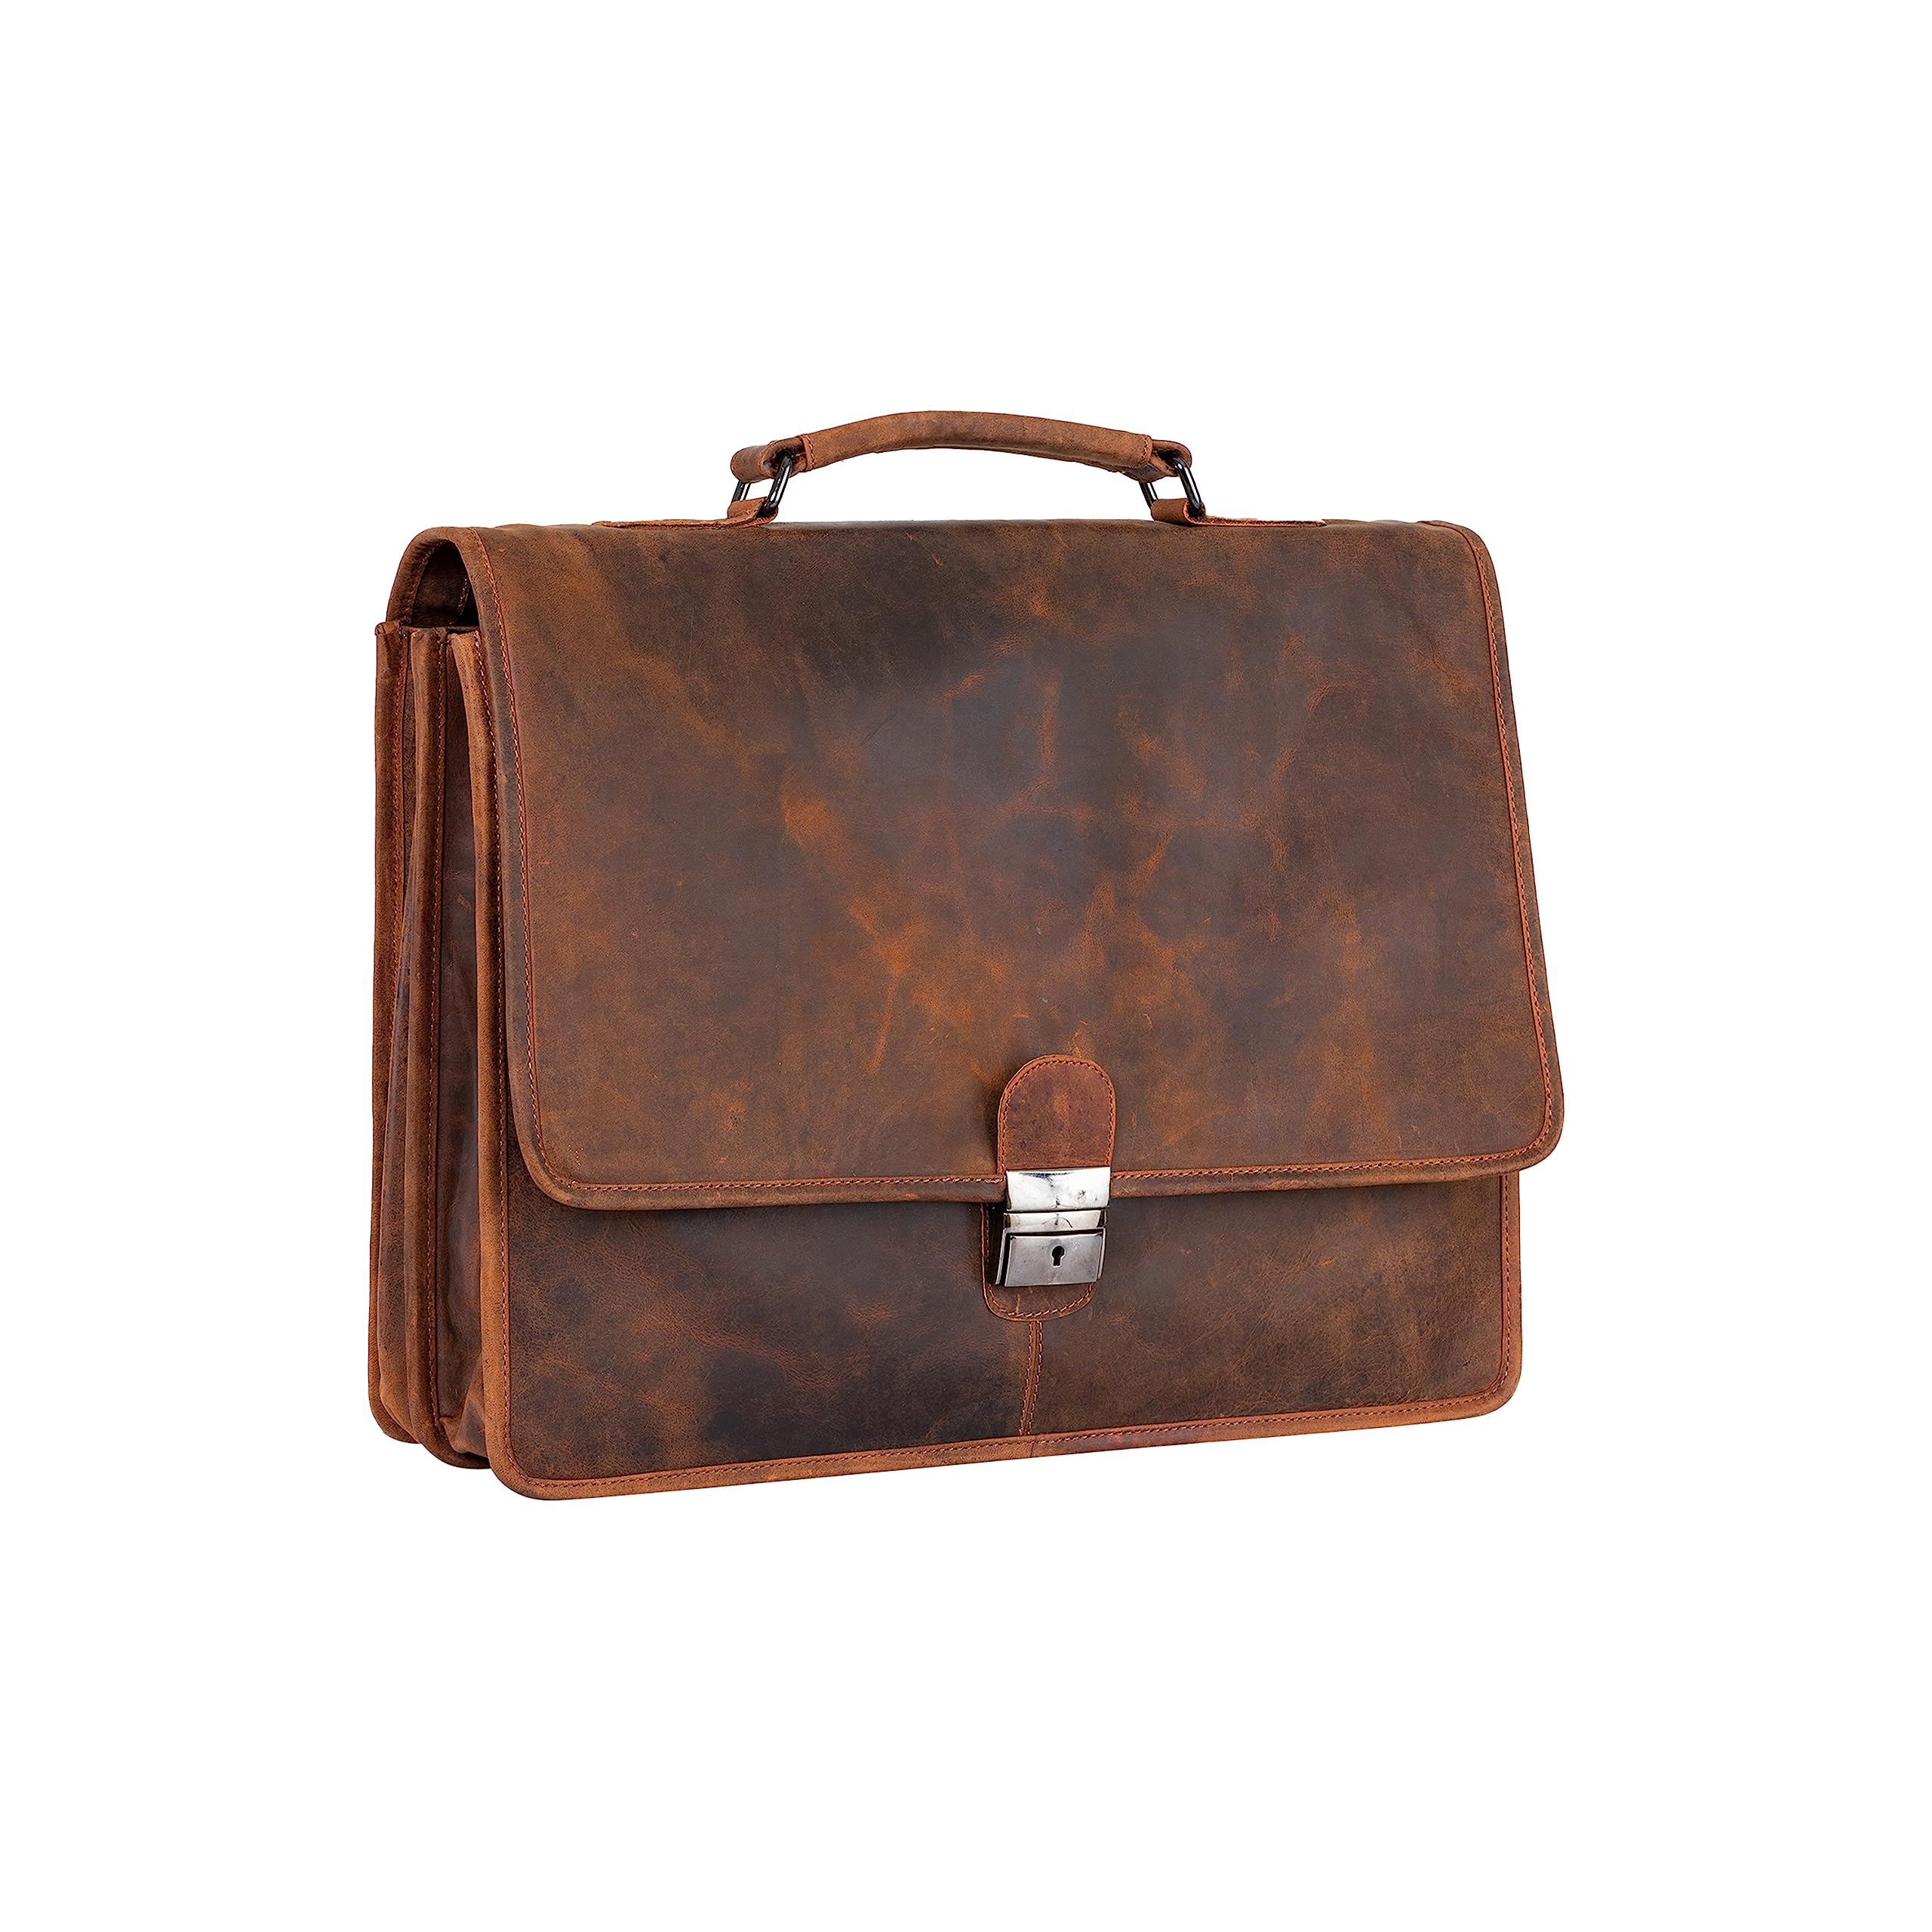 LEATHER LADY Men's Vintage Leather Briefcase Brown Messenger Satchel Shoulder Laptop Bag Business Overnight Travel Bag